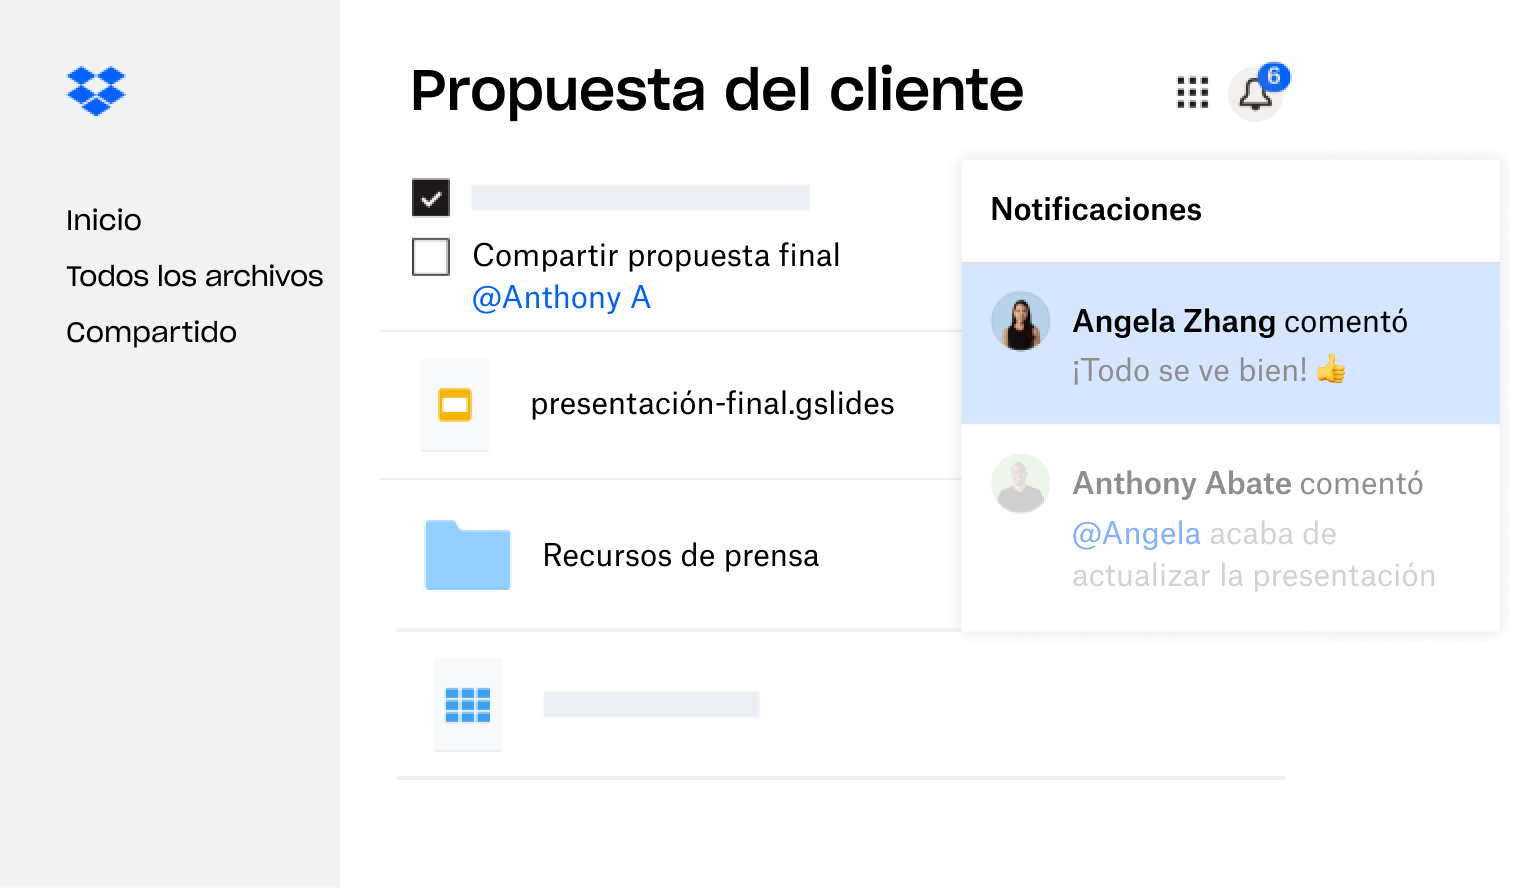 Una propuesta de cliente creada en Dropbox se comparte con múltiples usuarios que han dejado comentarios